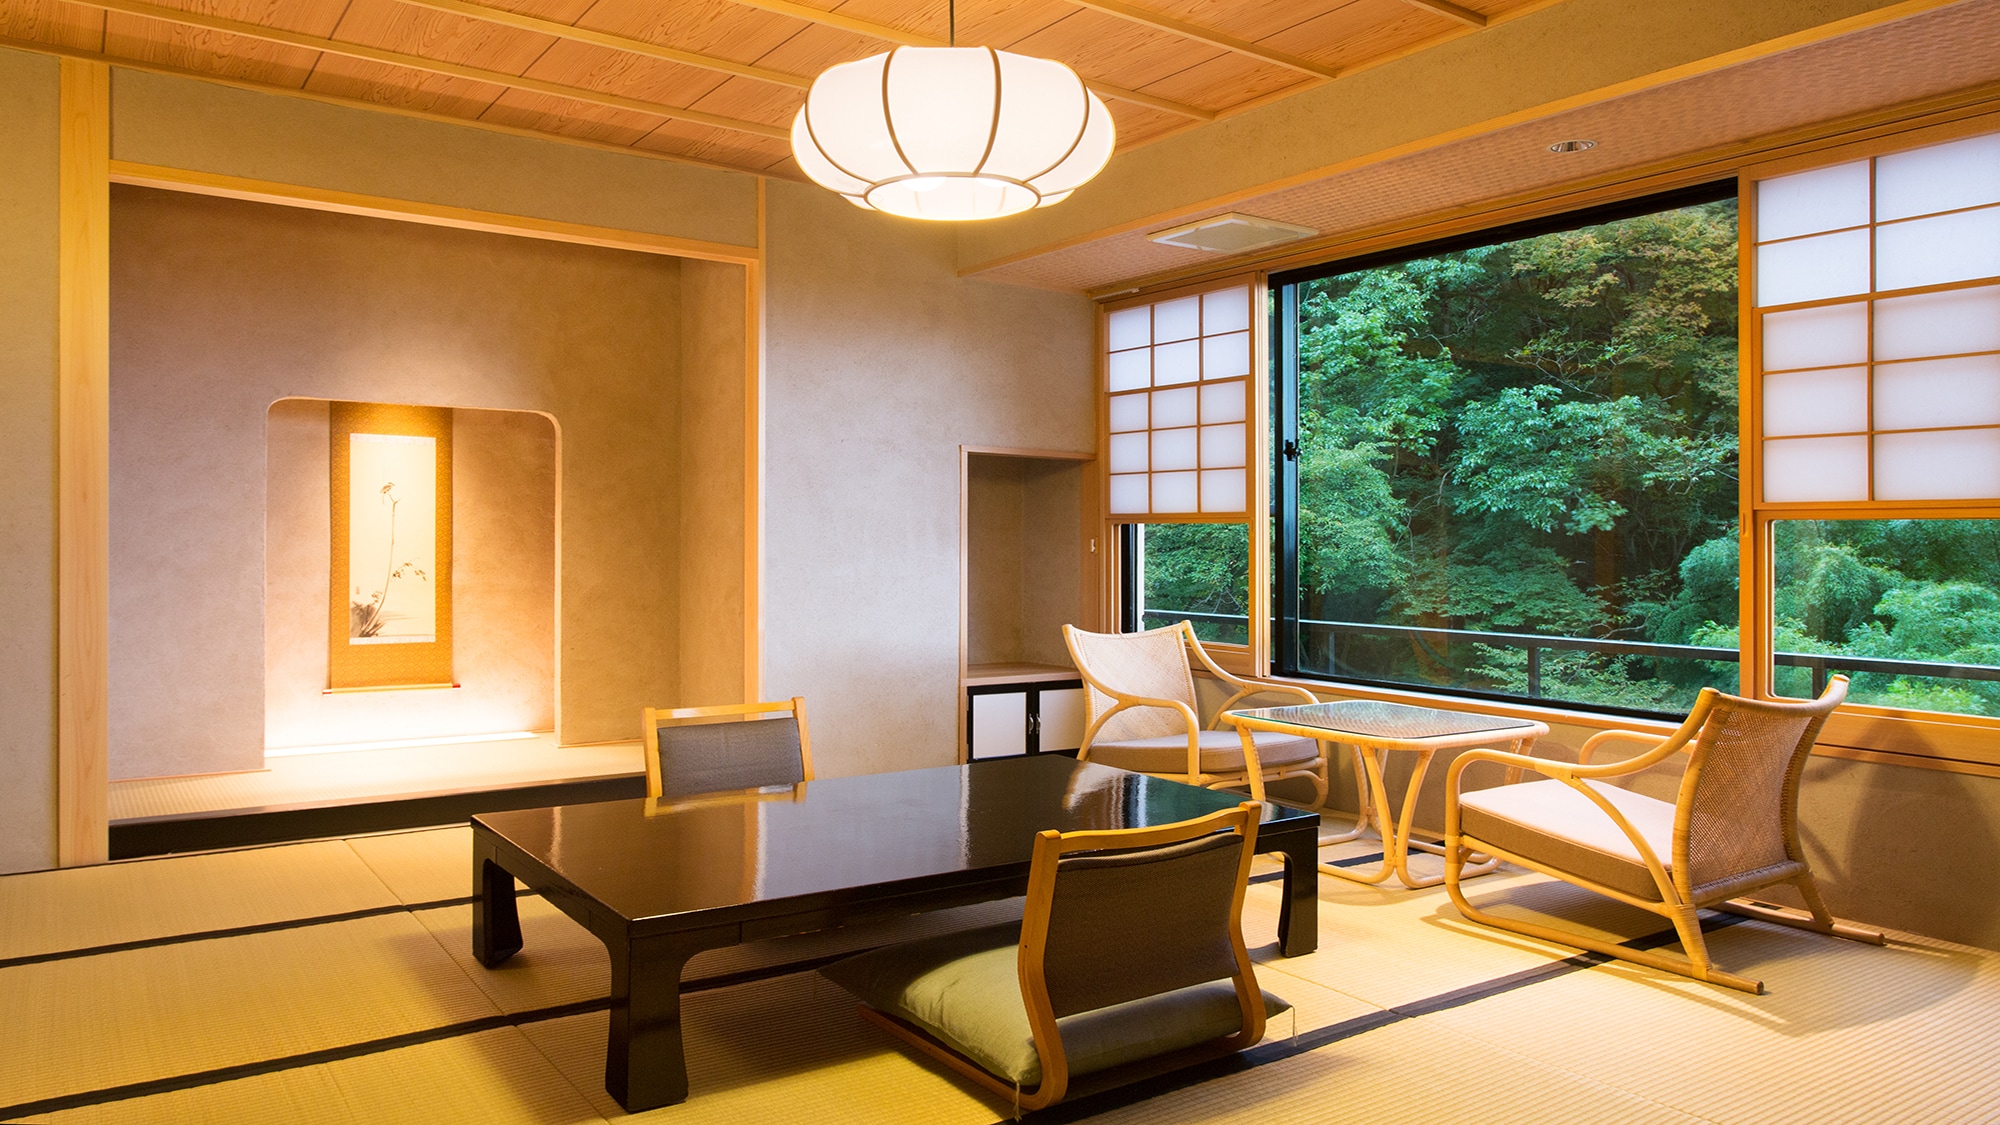 전망 일본식 방 「무상안(무소안) 객실」의 이미지♪ ※객실마다 전망, 배치가 다릅니다♪